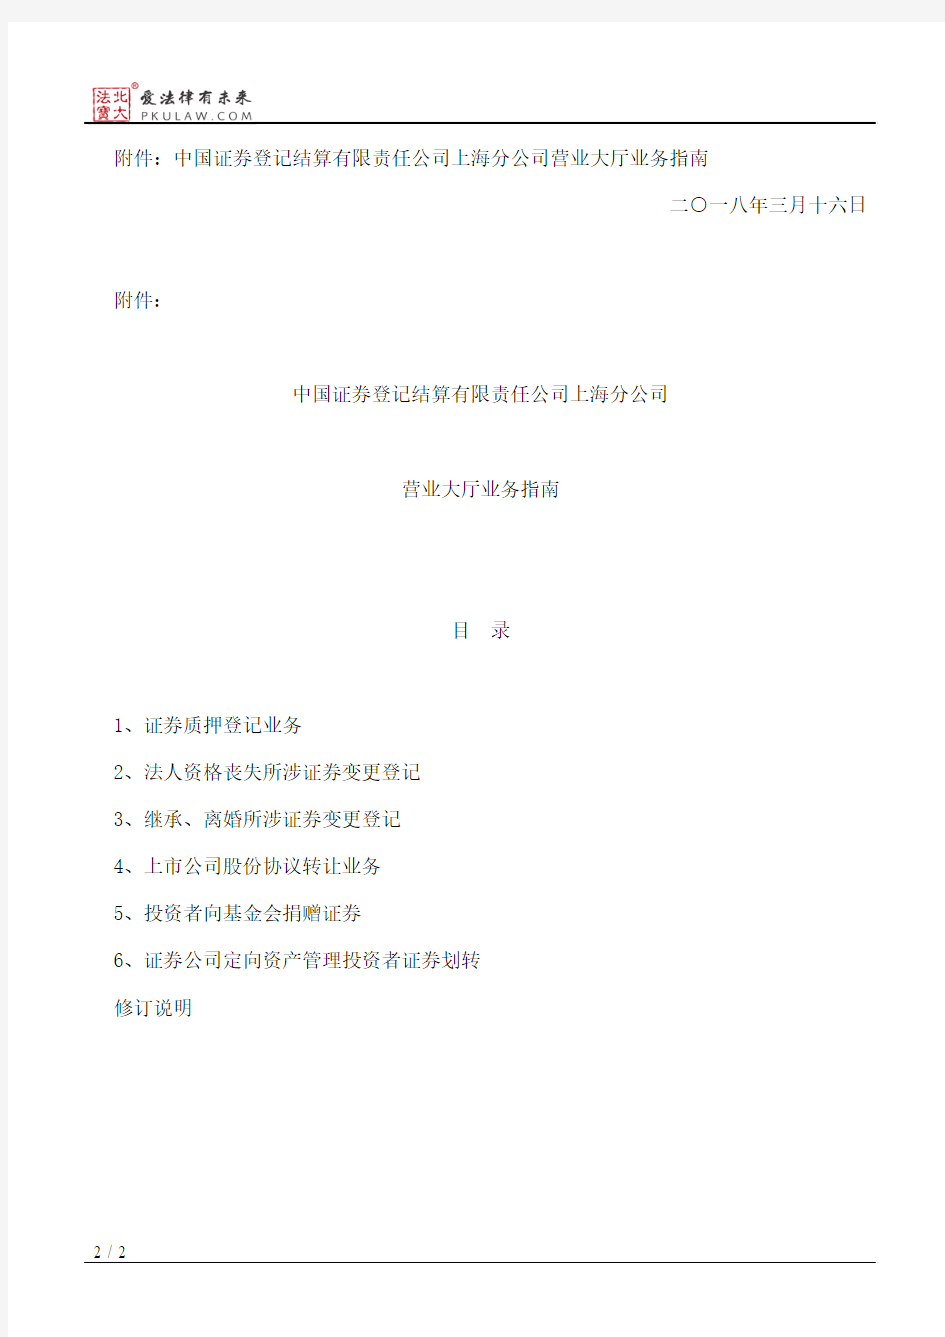 中国证券登记结算有限责任公司上海分公司关于修订《中国证券登记